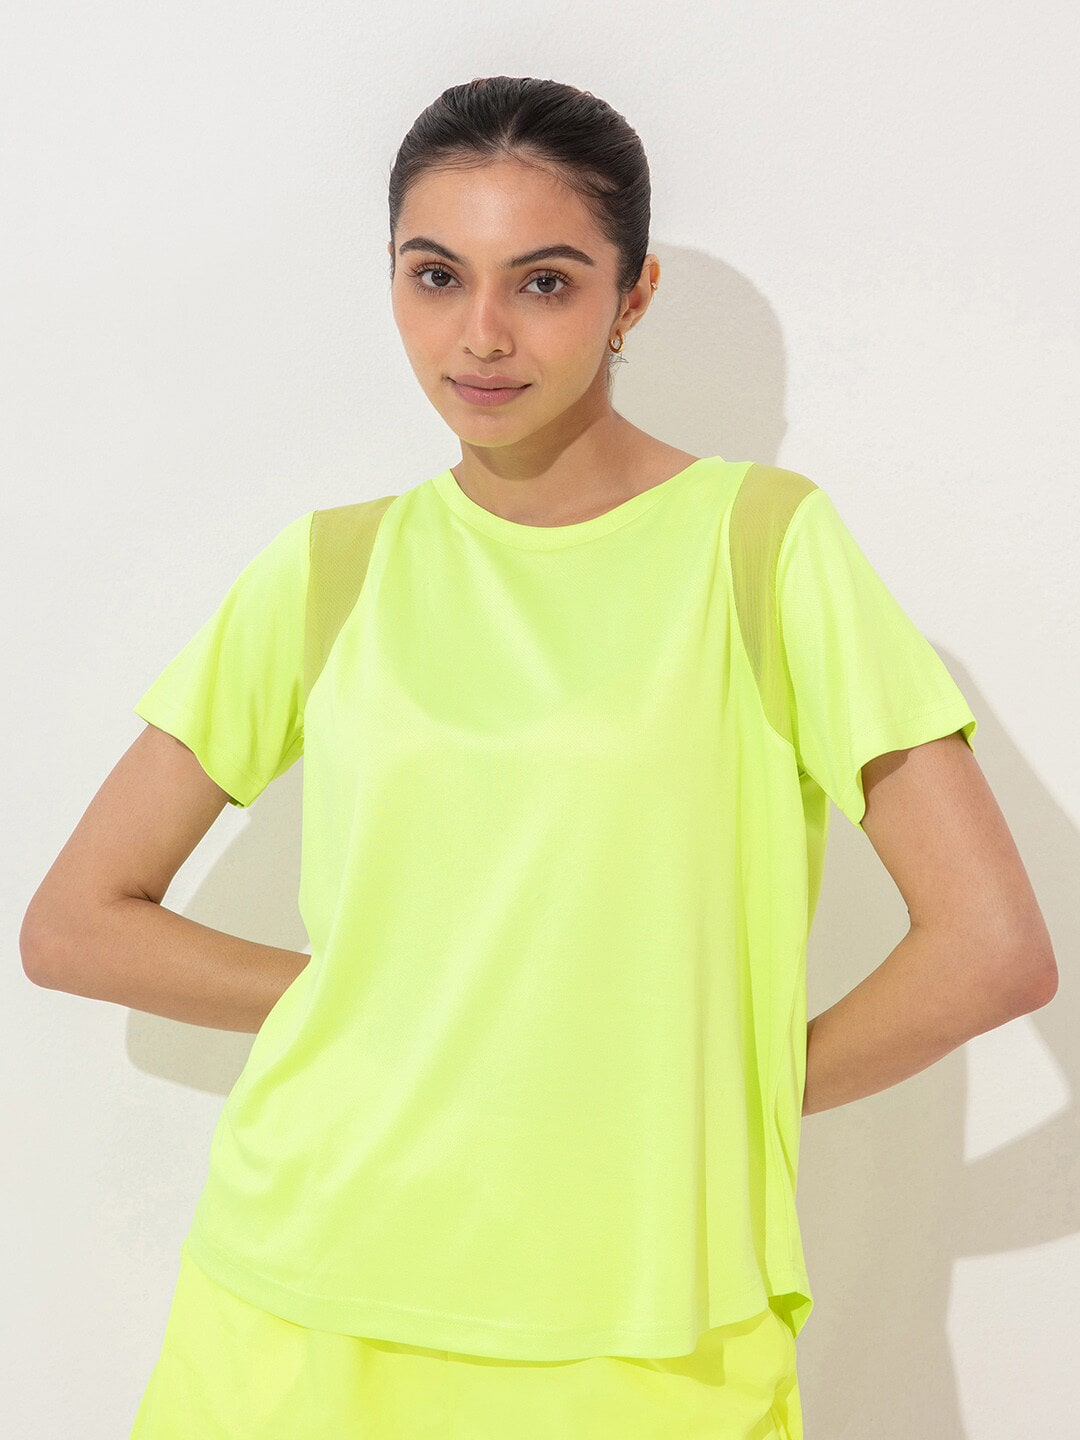 KICA Women Yellow T-shirt Price in India